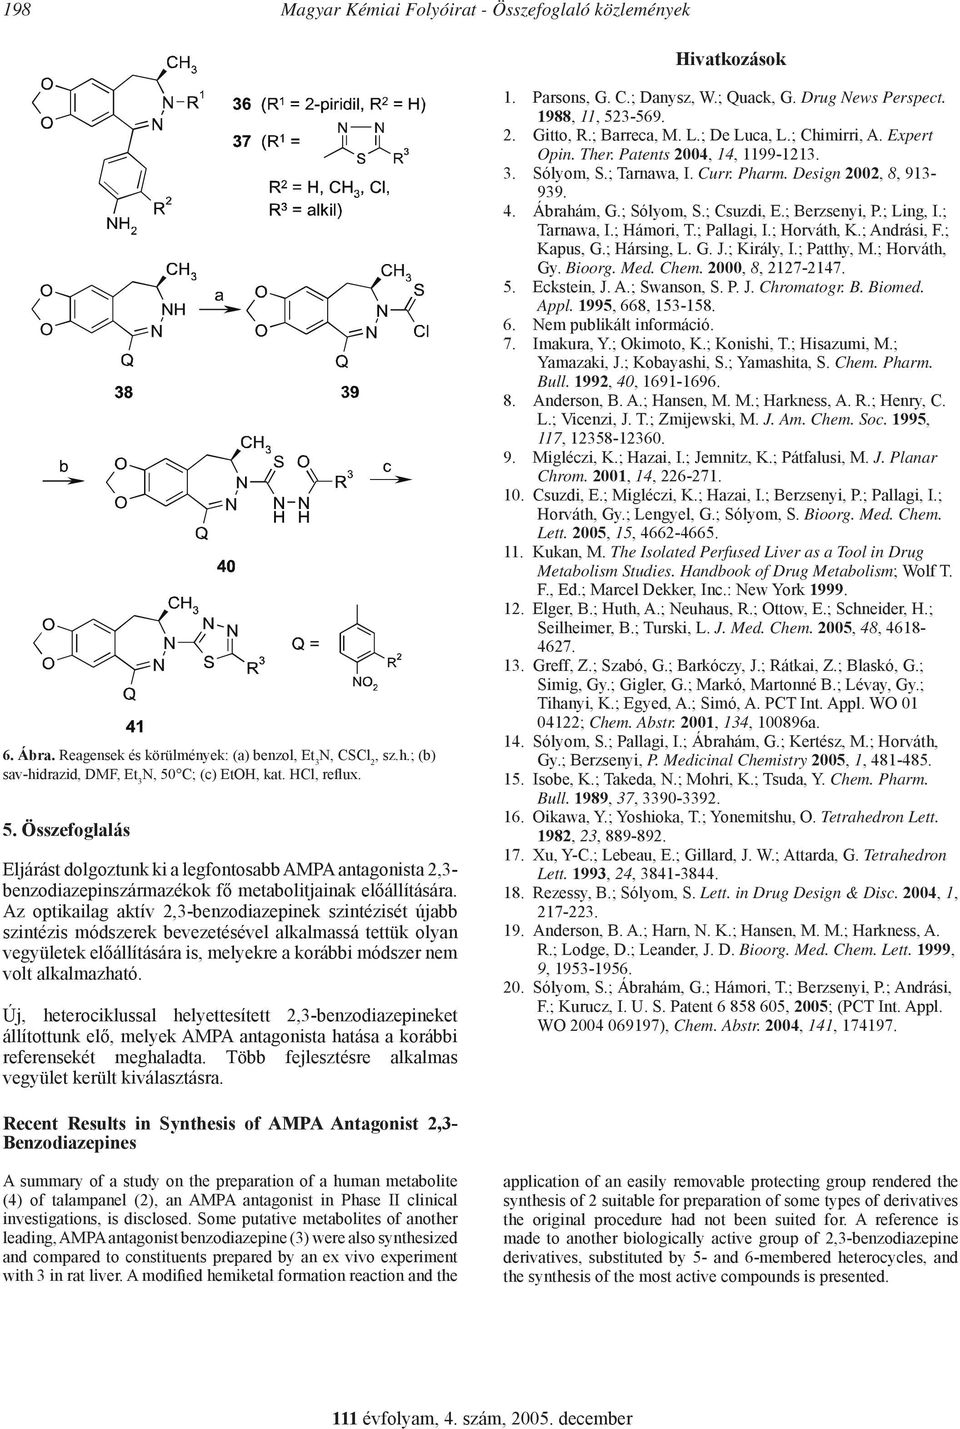 Az optikailag aktív 2,3-benzodiazepinek szintézisét újabb szintézis módszerek bevezetésével alkalmassá tettük olyan vegyületek előállítására is, melyekre a korábbi módszer nem volt alkalmazható.